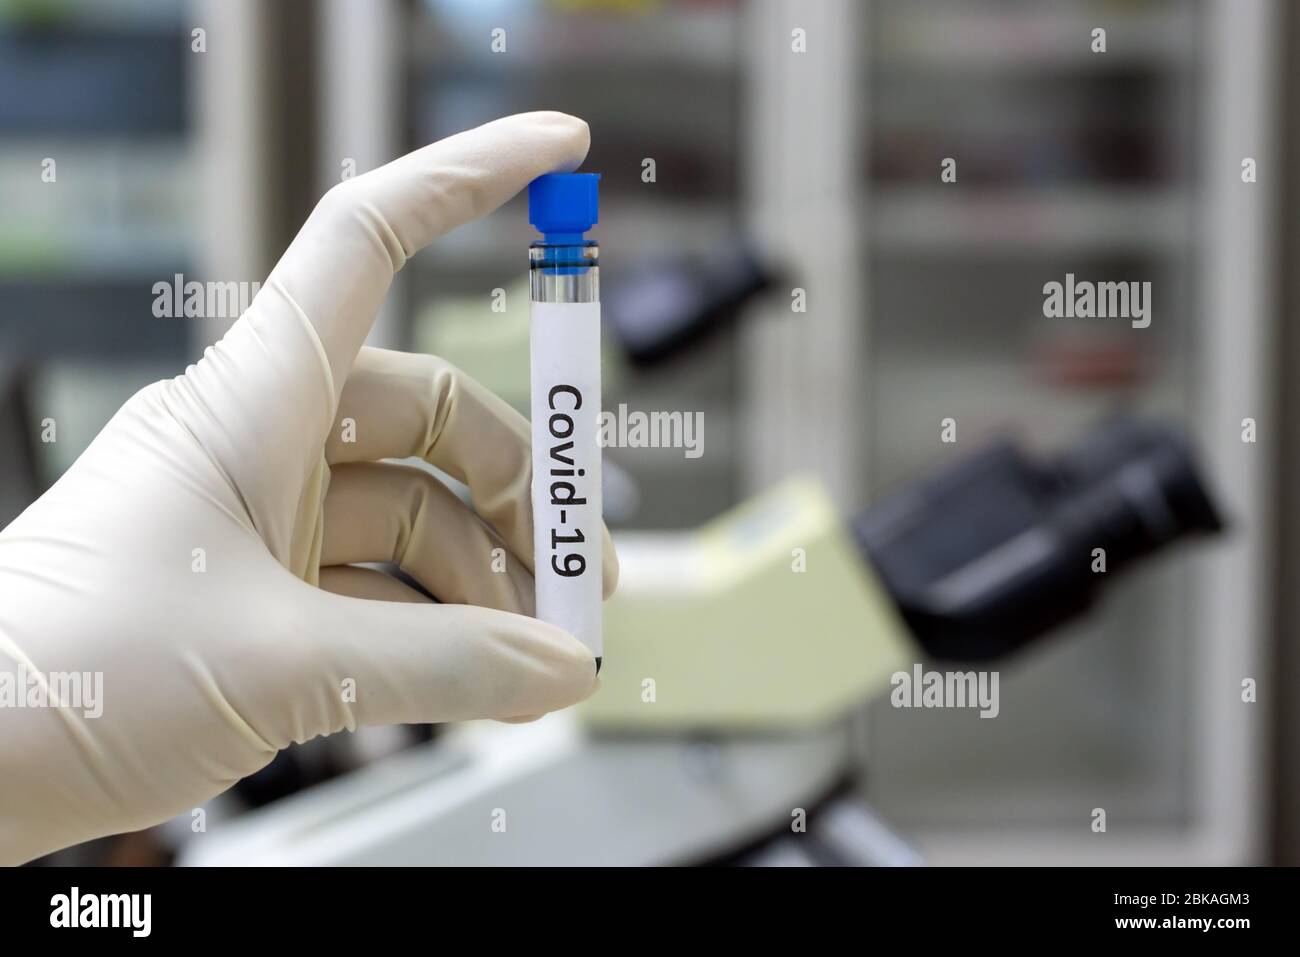 Recherche de virus en laboratoire. Main dans le gant tenant une éprouvette avec l'inscription covid-19 dans un laboratoire. Échantillon de sang. Banque D'Images